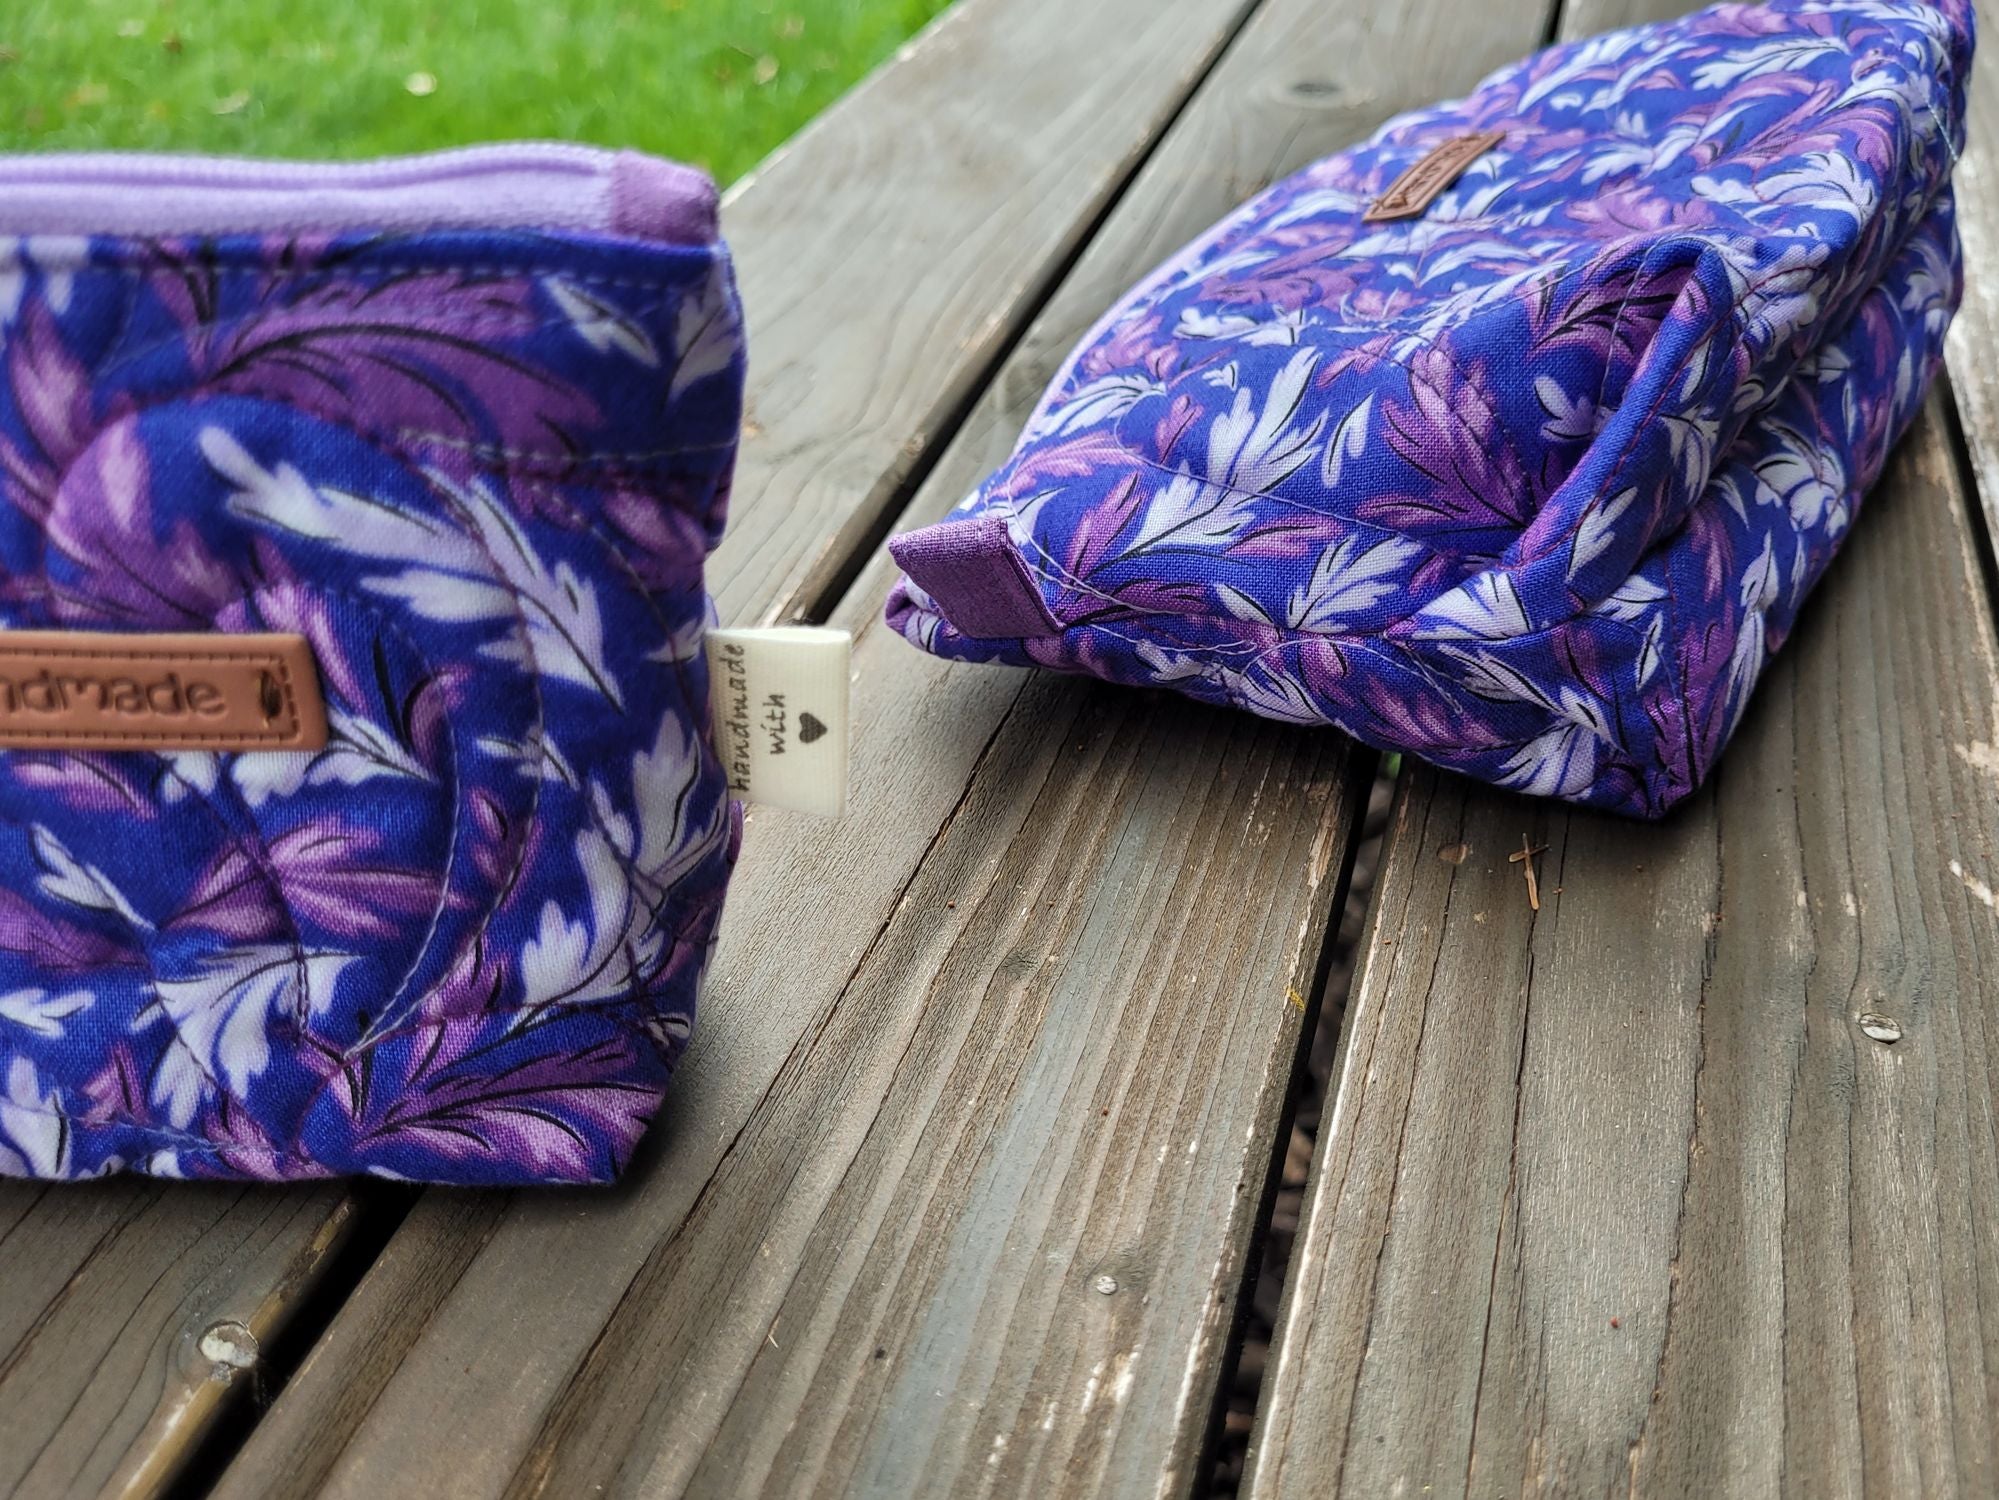 zipper pouches in purple leaf fabric